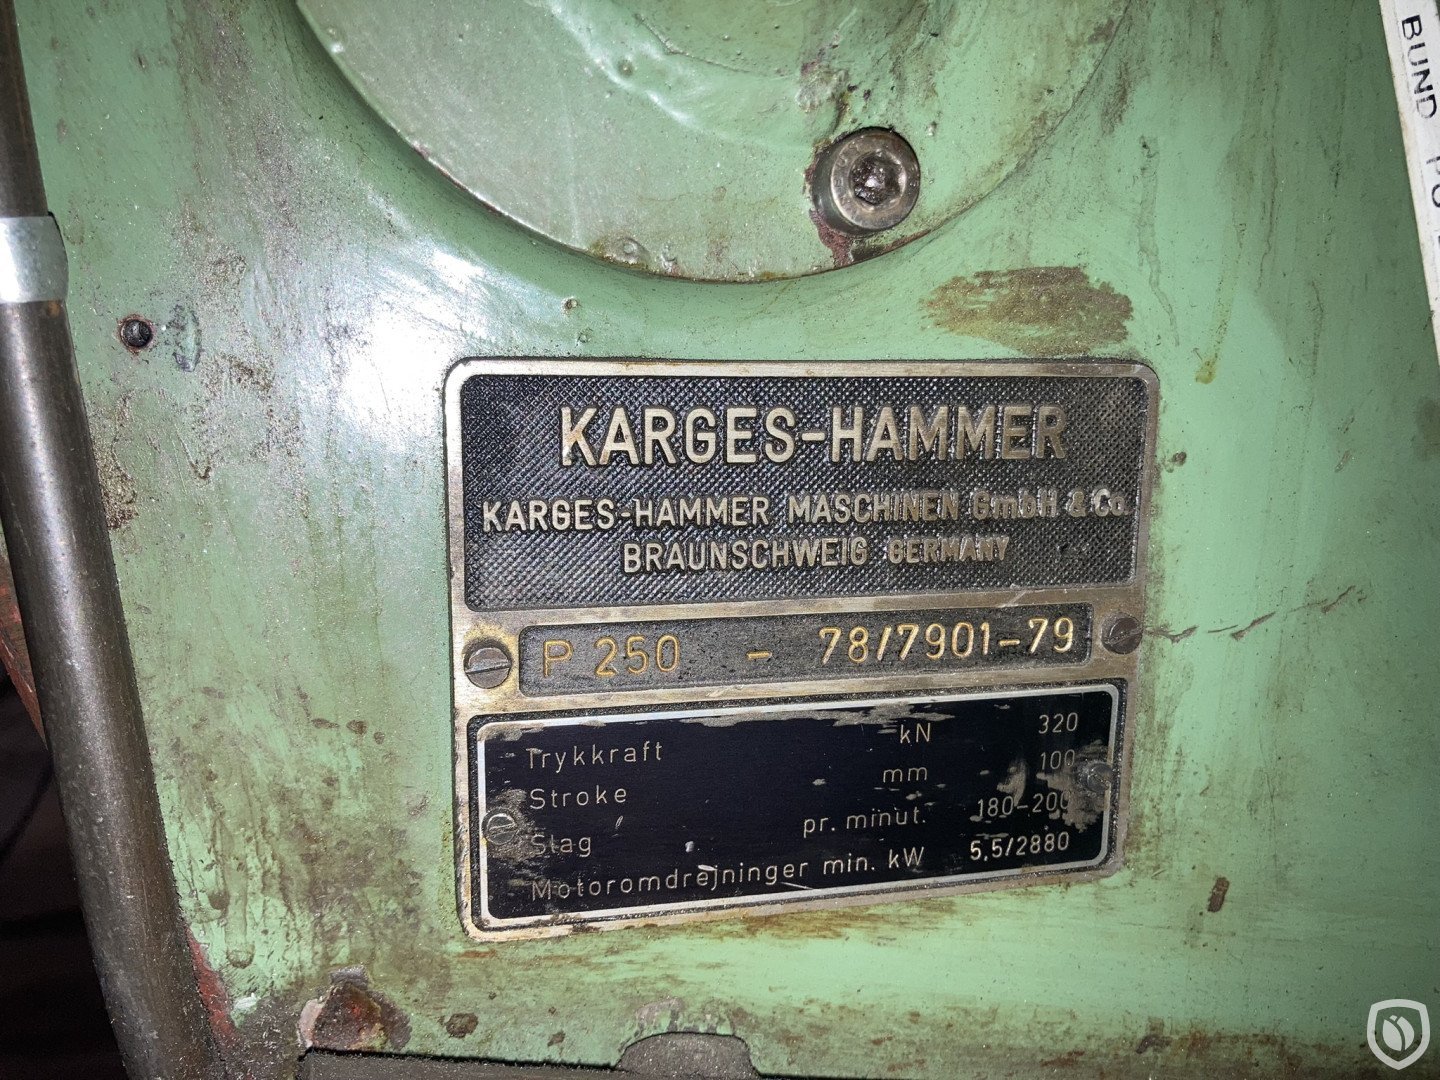 Karges Hammer P 250